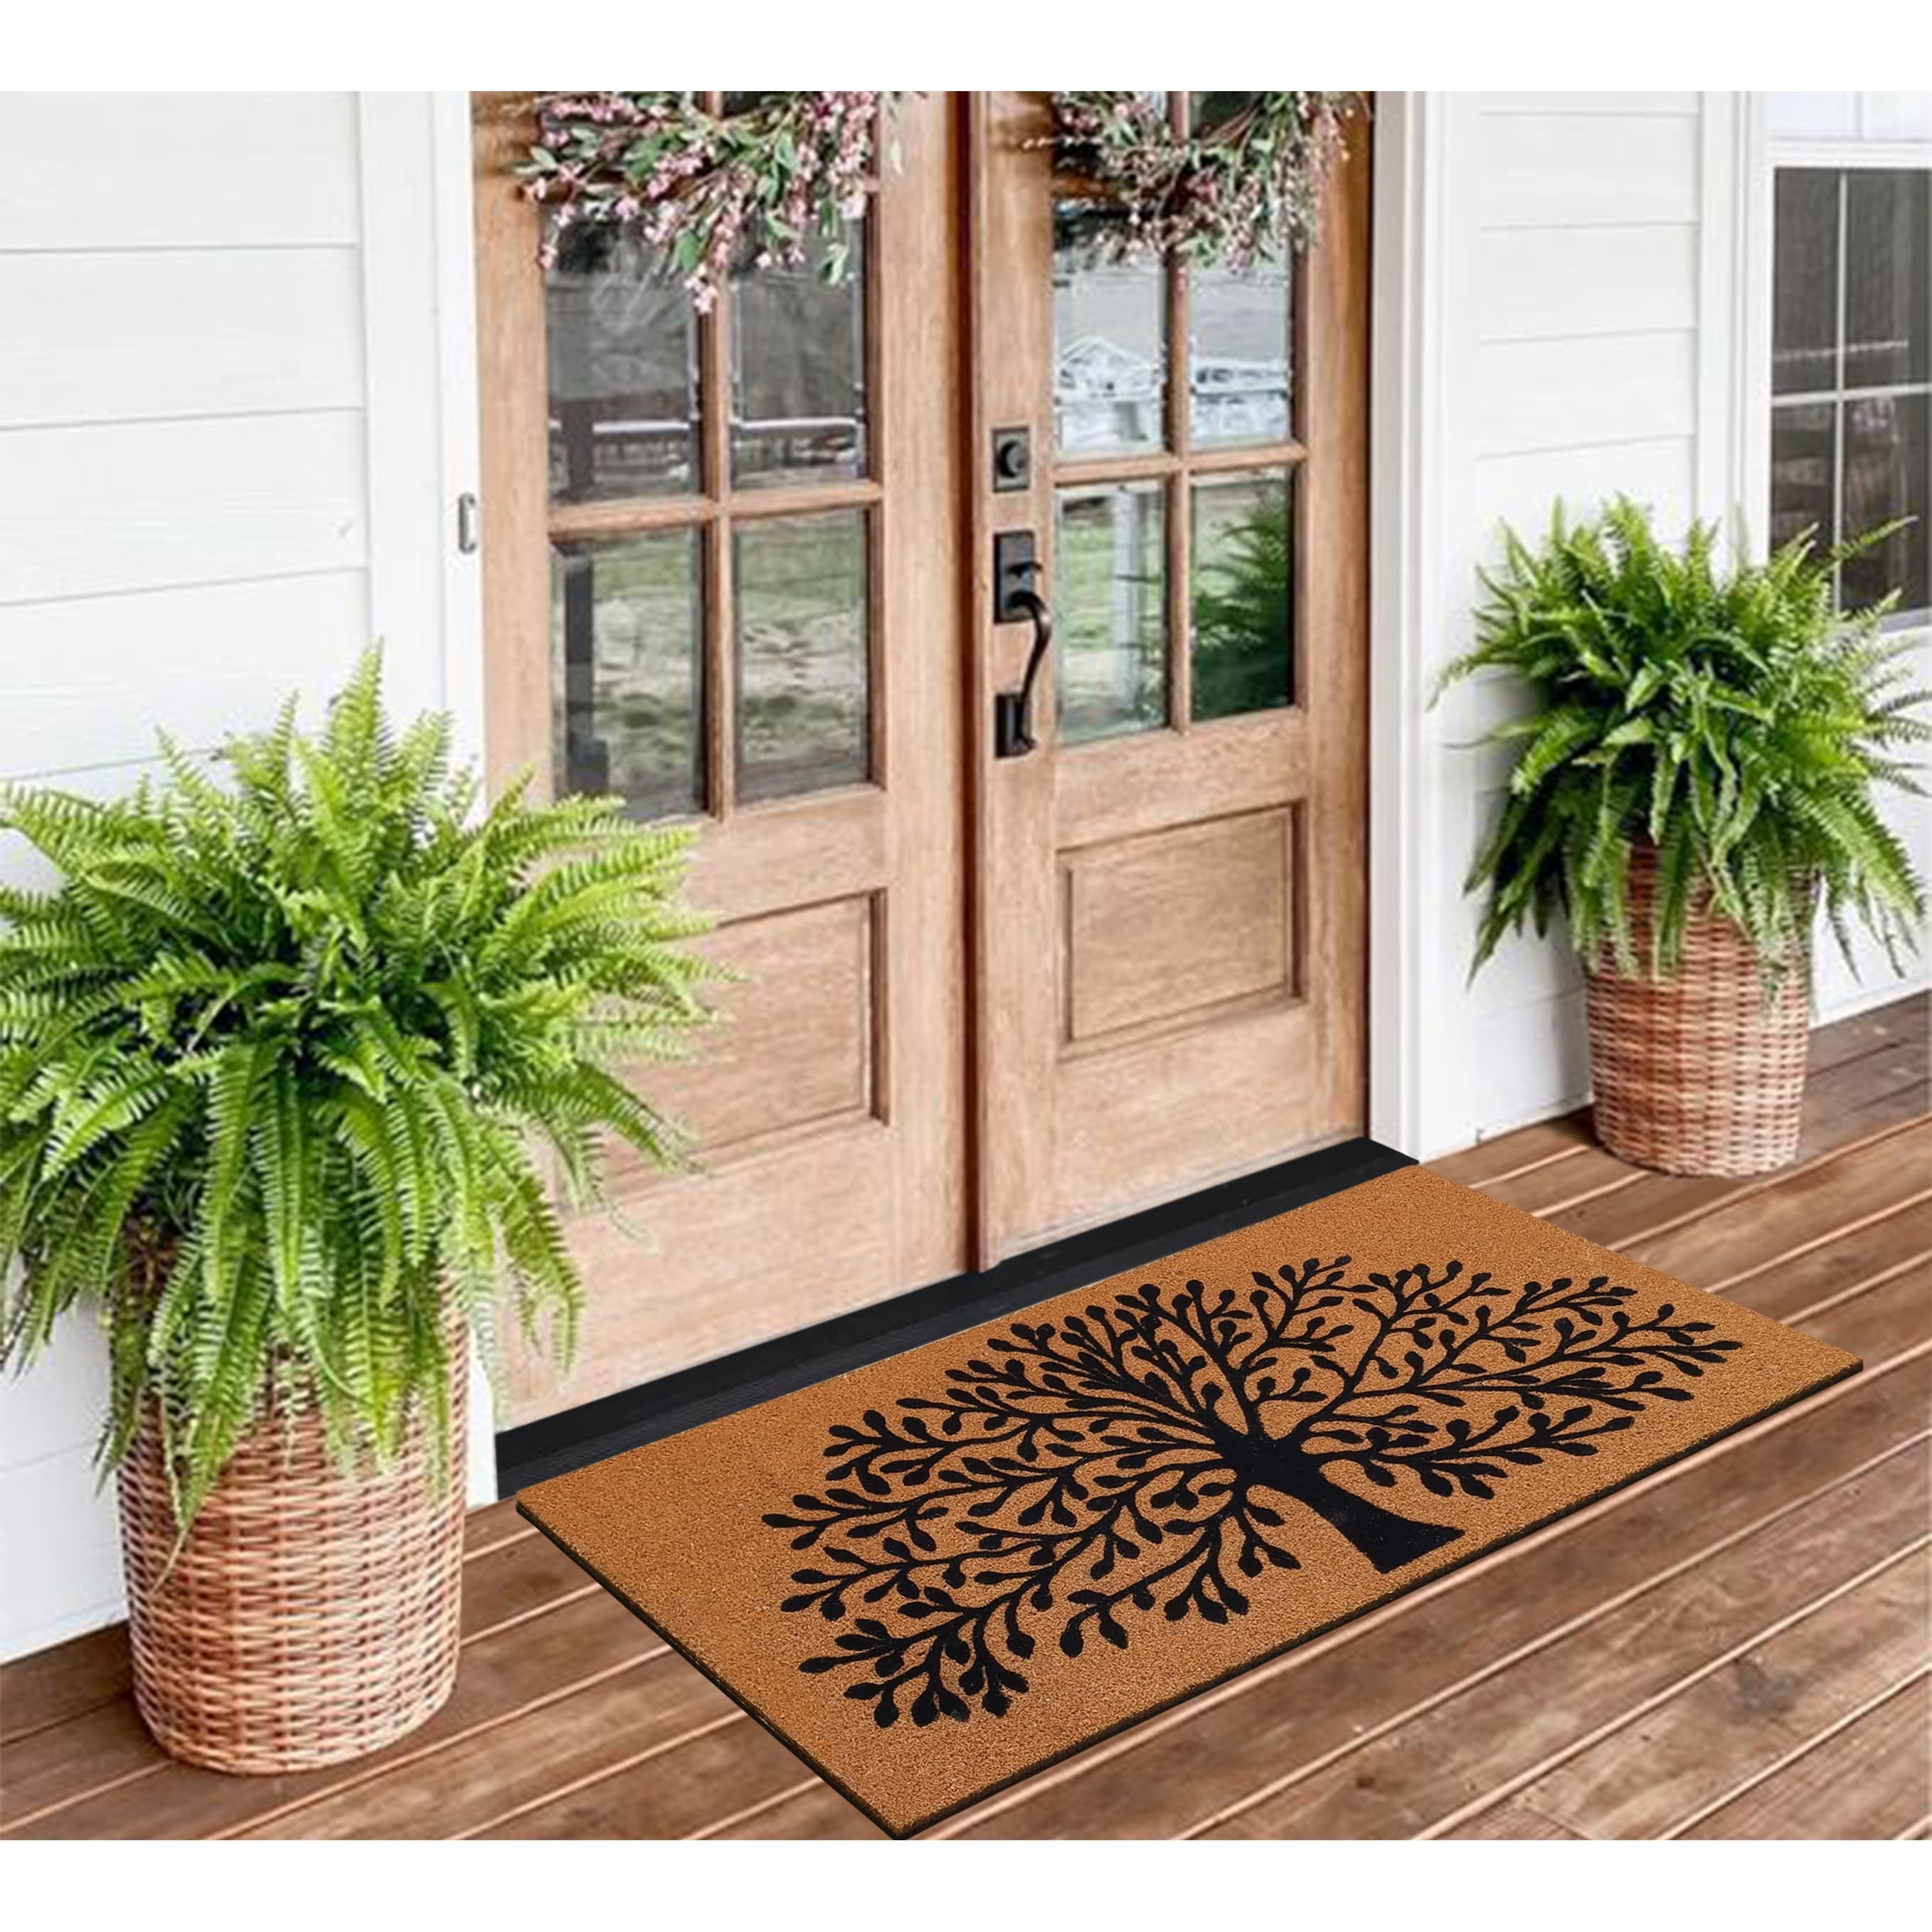 https://ak1.ostkcdn.com/images/products/is/images/direct/9a11b34661398ce28078ea00936e94ee19244976/A1HC-Entrance-Door-Mats%2C-Durable-Large-Outdoor-Rug%2C-Non-Slip%2C-Flock-Doormat%2C-Heavy-Duty-Door-Mat%2C-Indoor-Outdoor-Front-Door.jpg